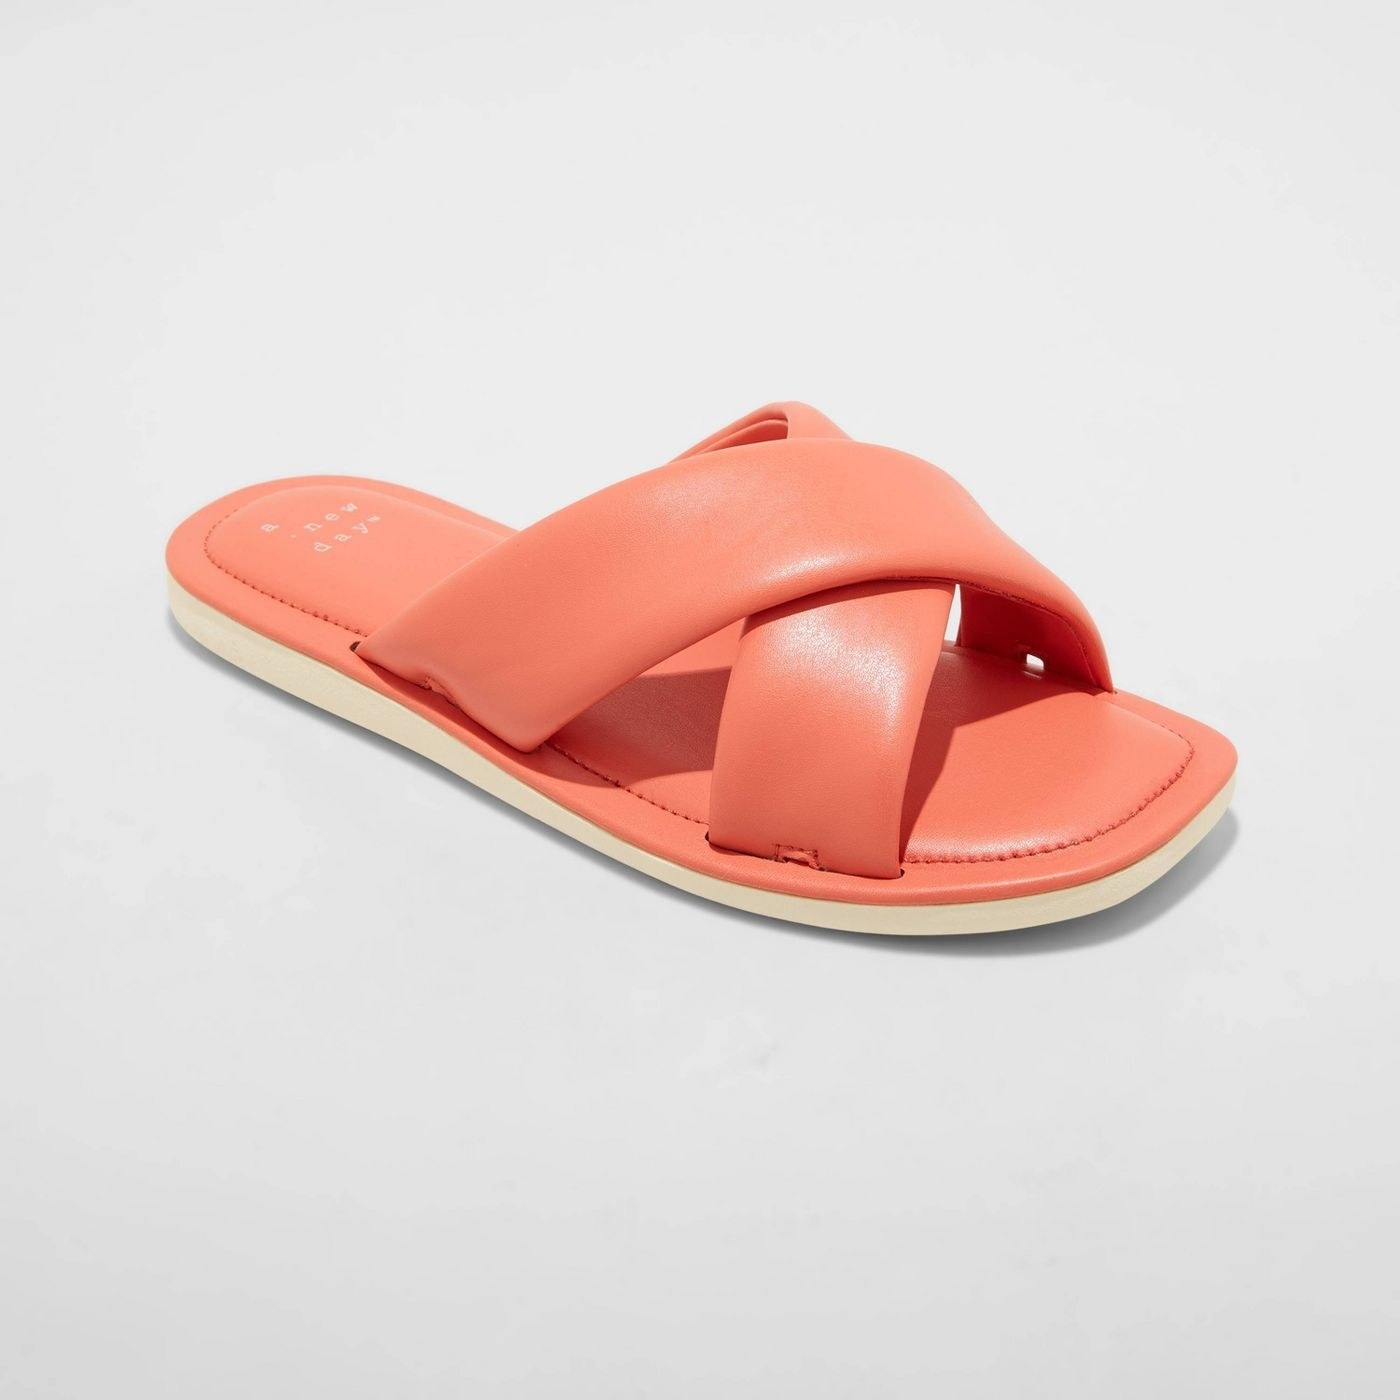 A coral crossband slide sandal